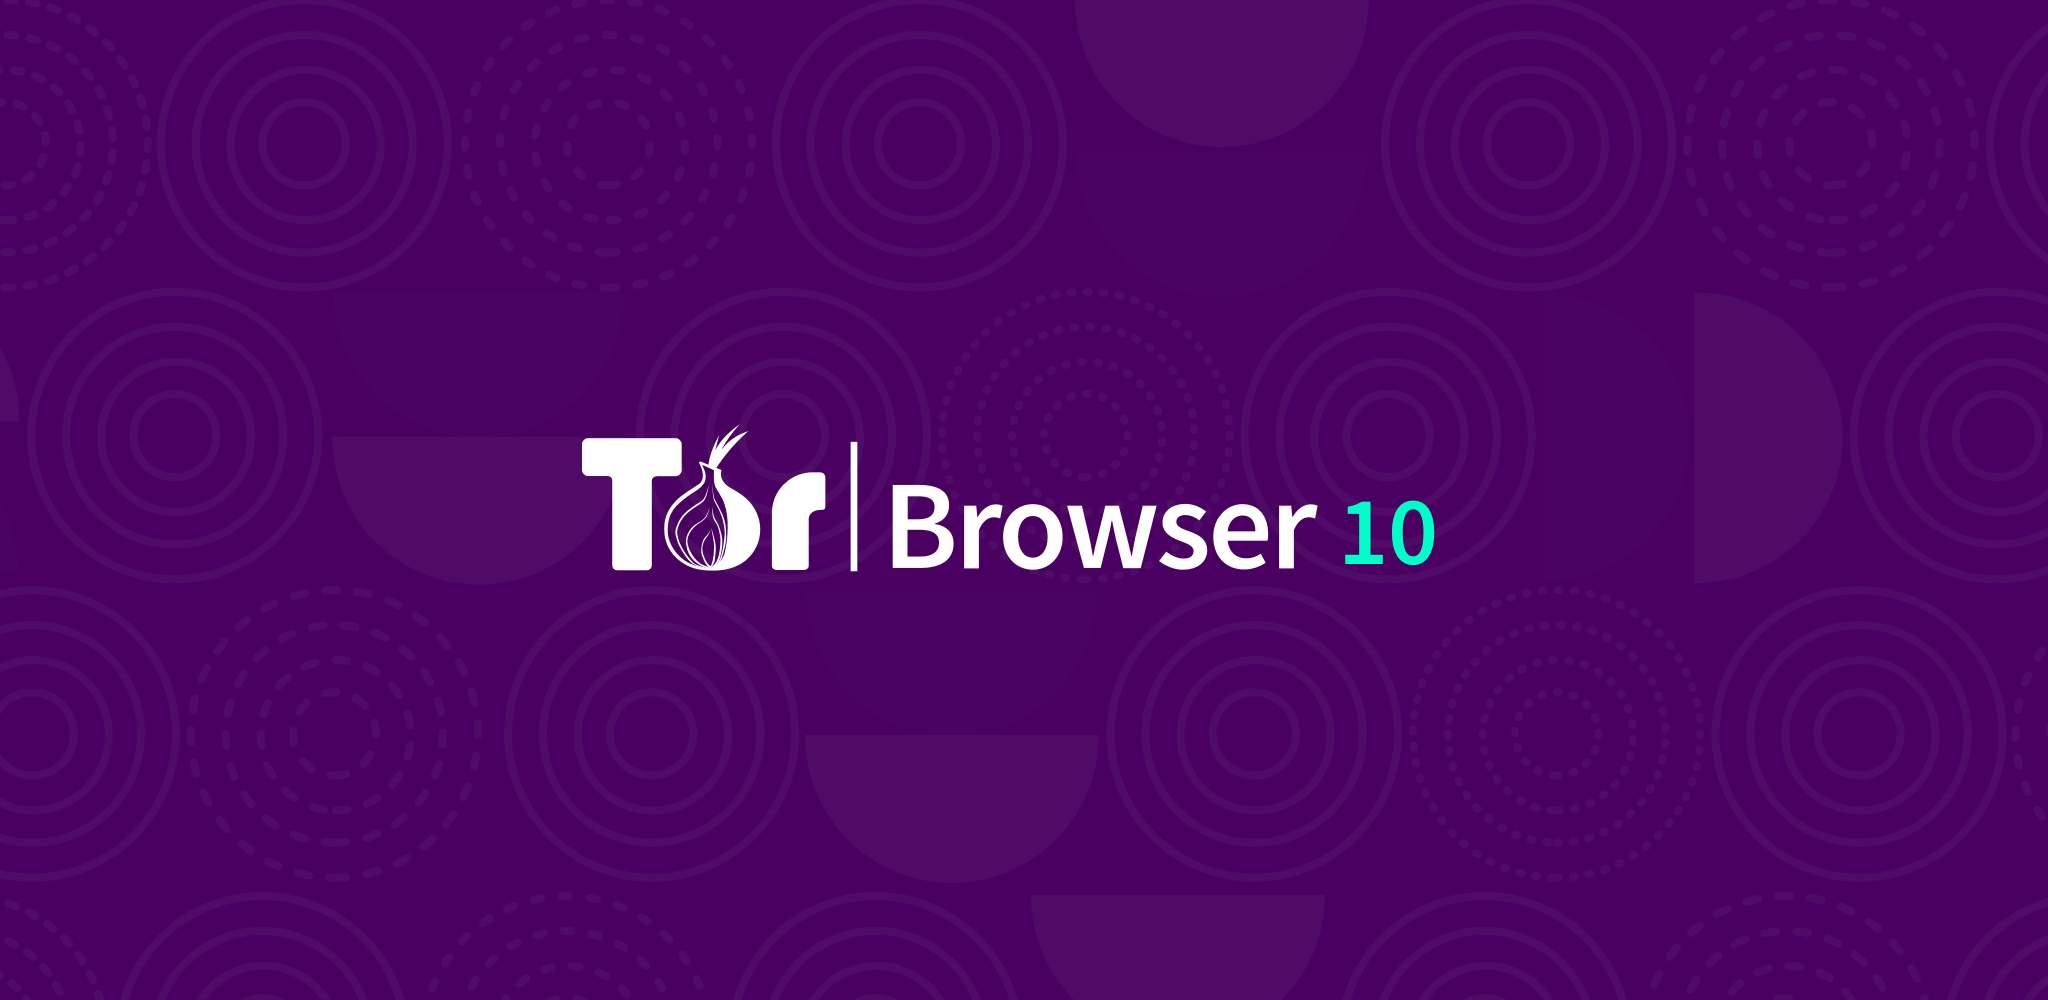 Red tor browser мега скачать браузер тор для планшета mega